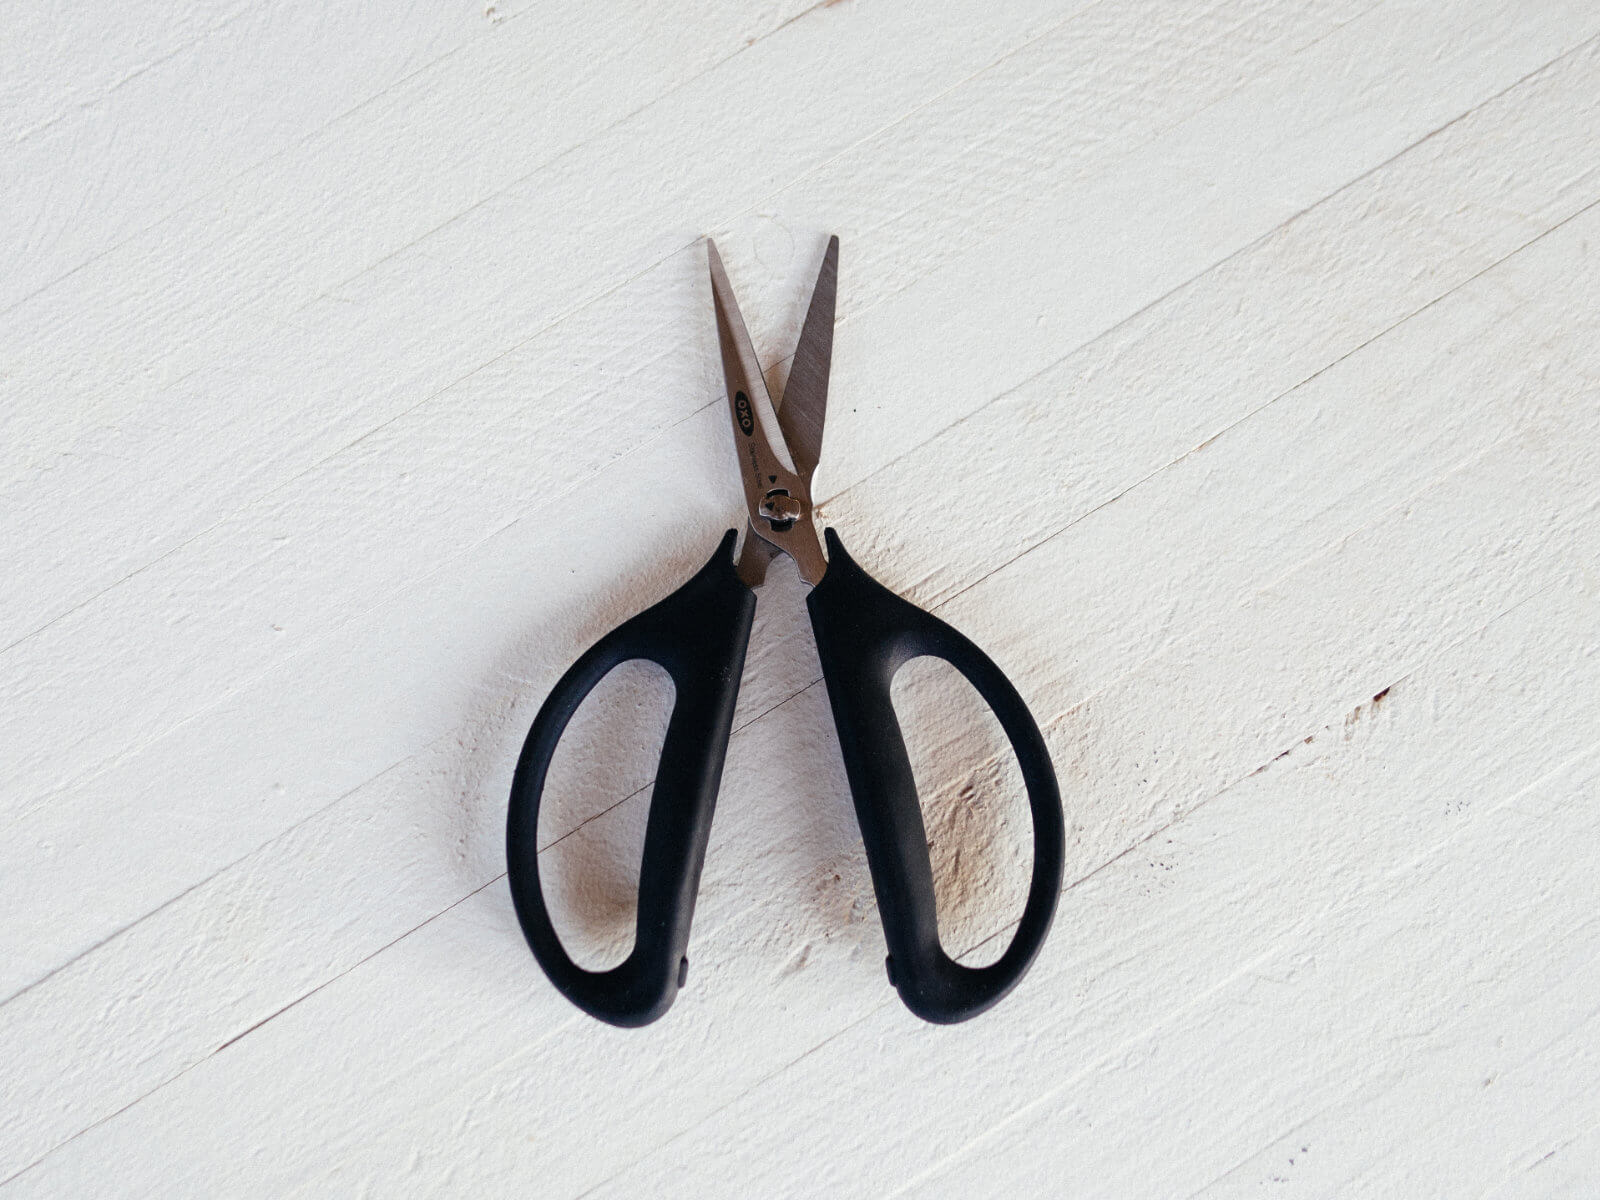 Household scissors for essential for everyday gardening tasks